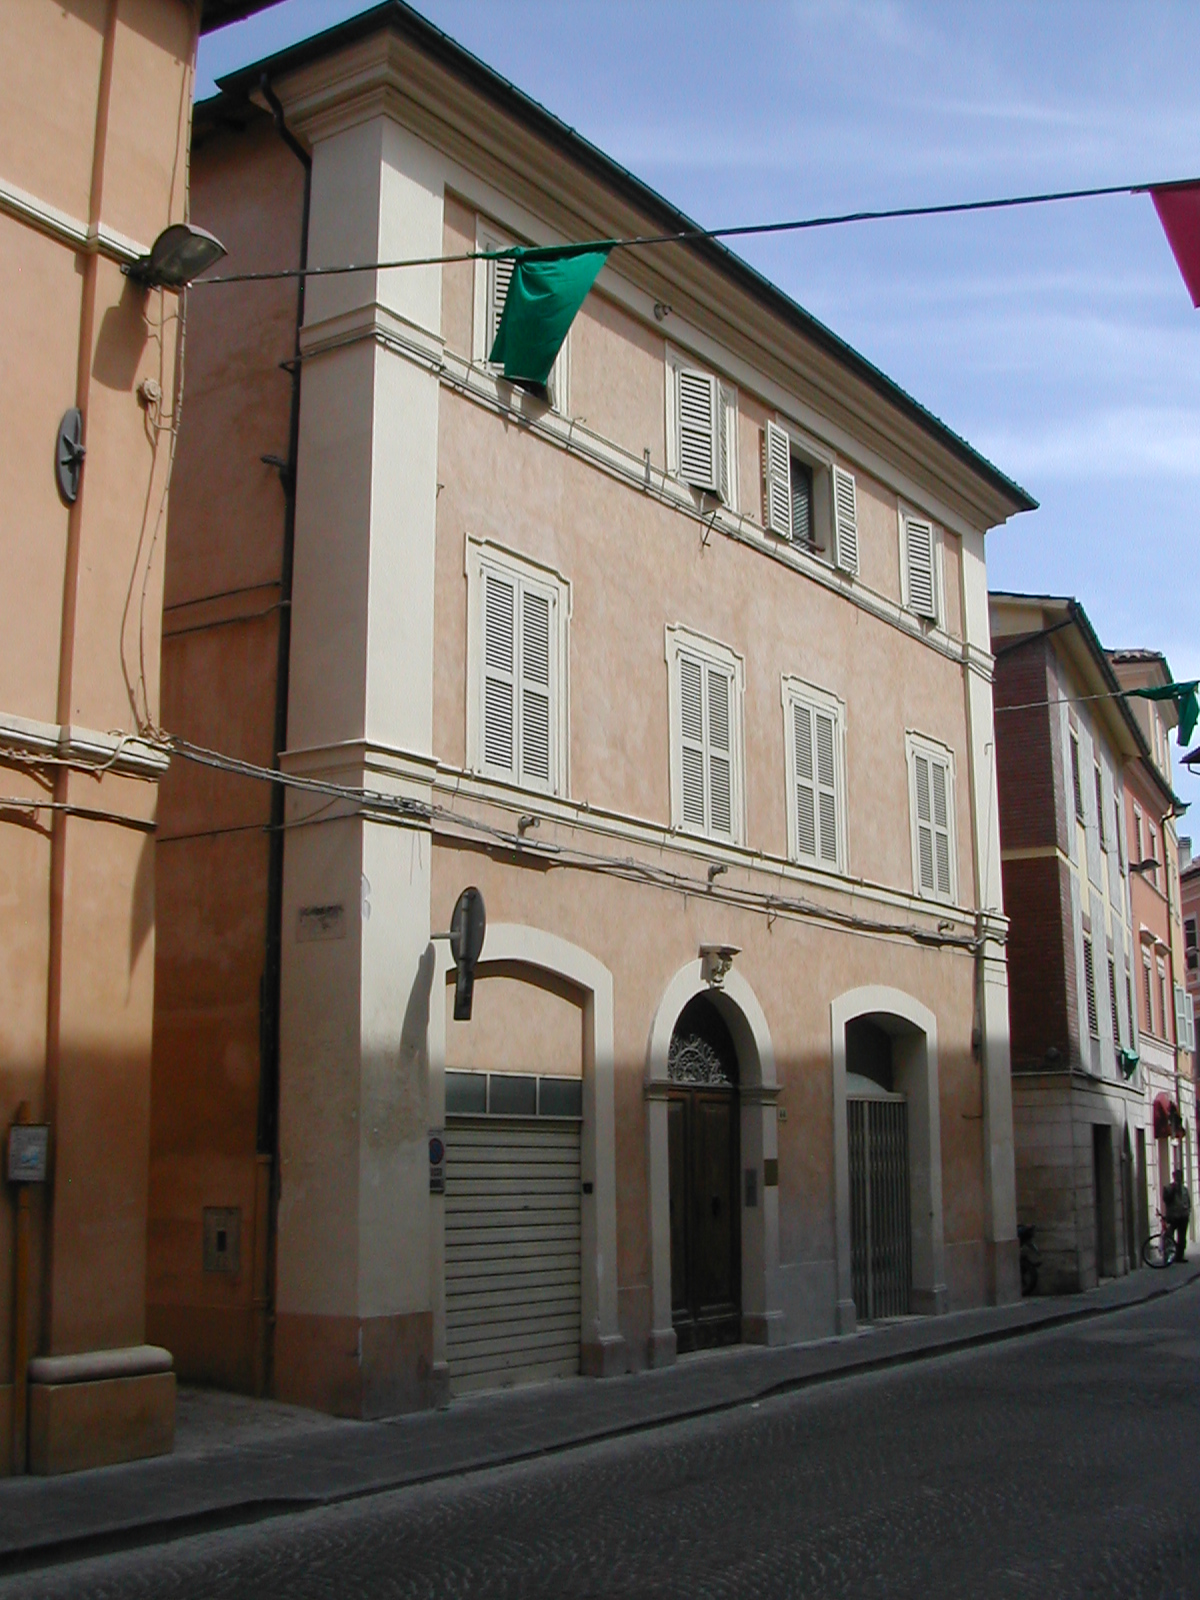 Palazzo Baldetti (palazzo, signorile) - Fabriano (AN) 